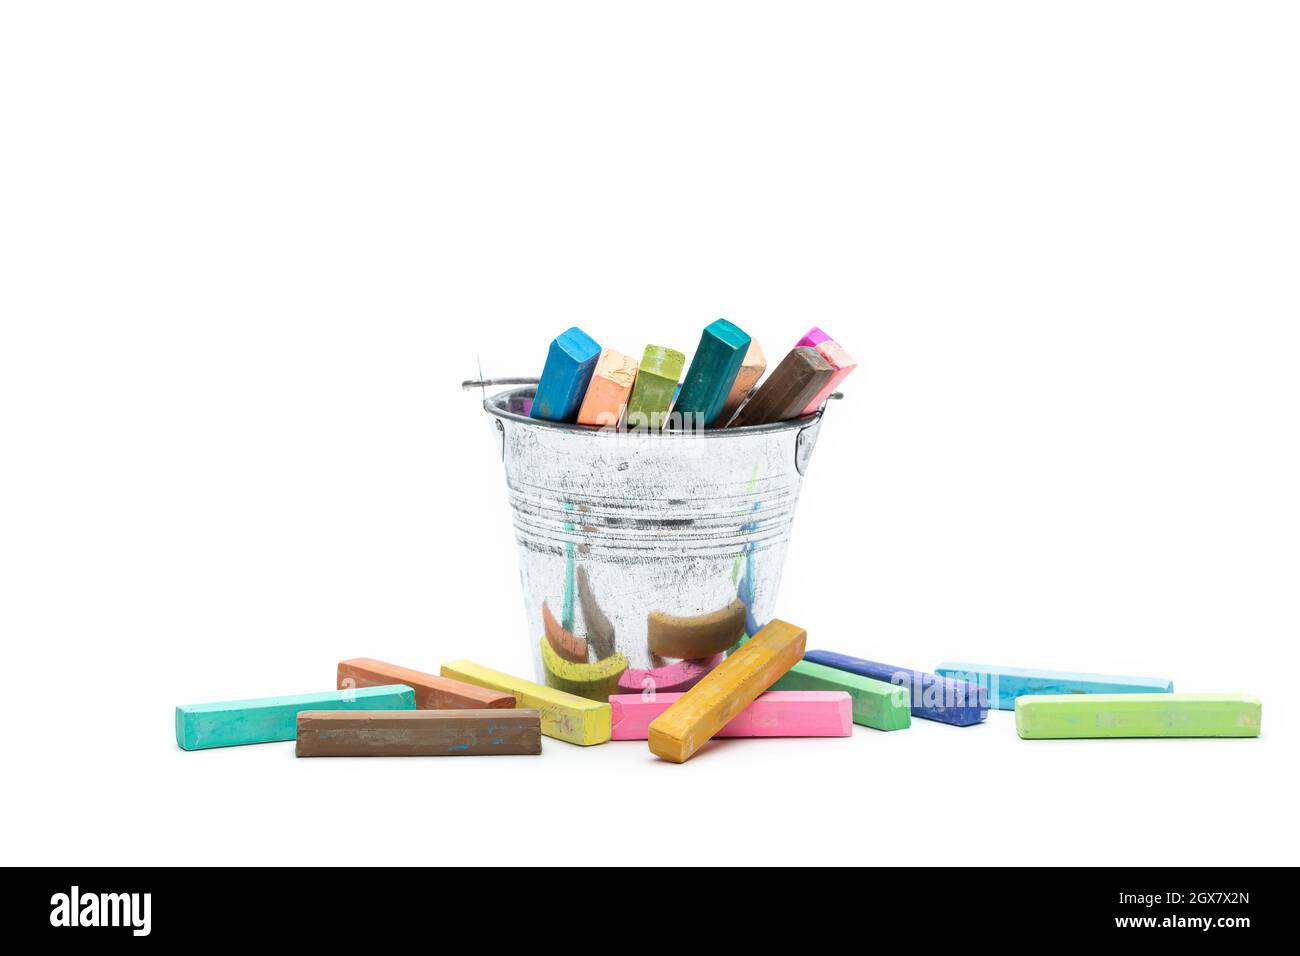 Cuadrados de colores pastel tizas se coloca en una lata de estaño y sobre un fondo blanco. Foto de stock